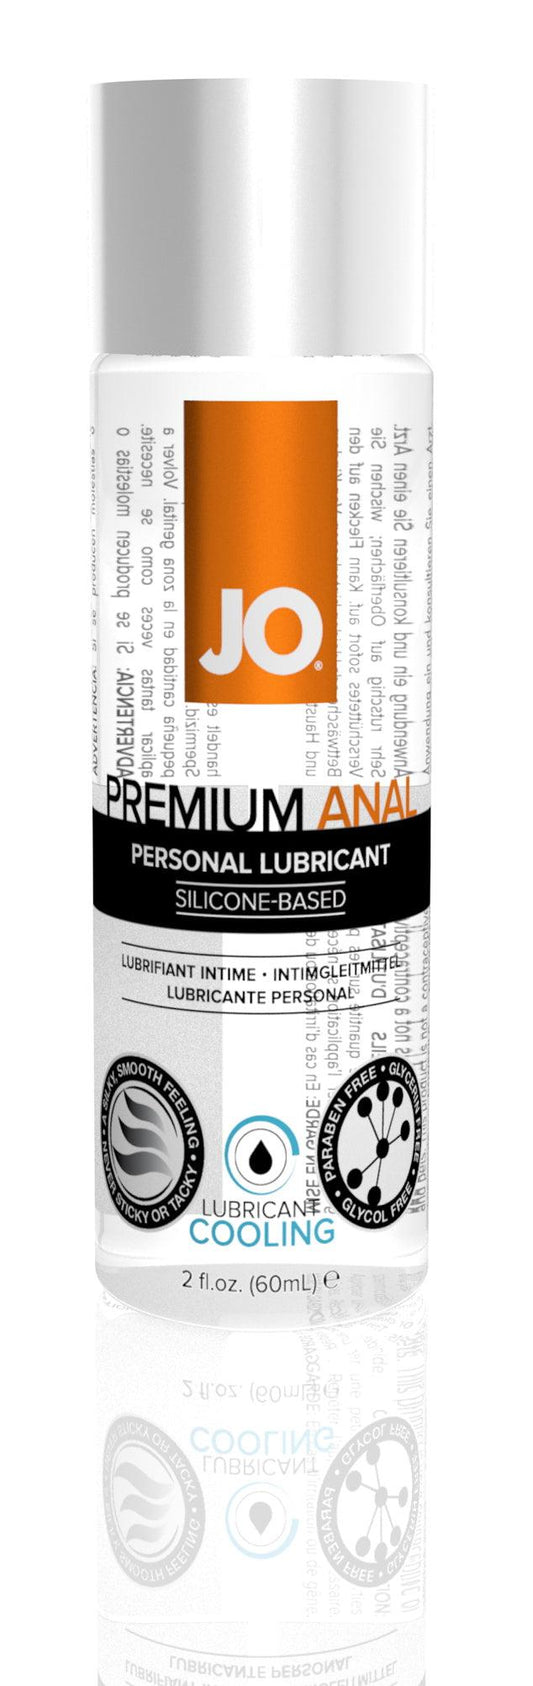 JO Anal Premium Cool 2 Oz / 60 ml - Take A Peek